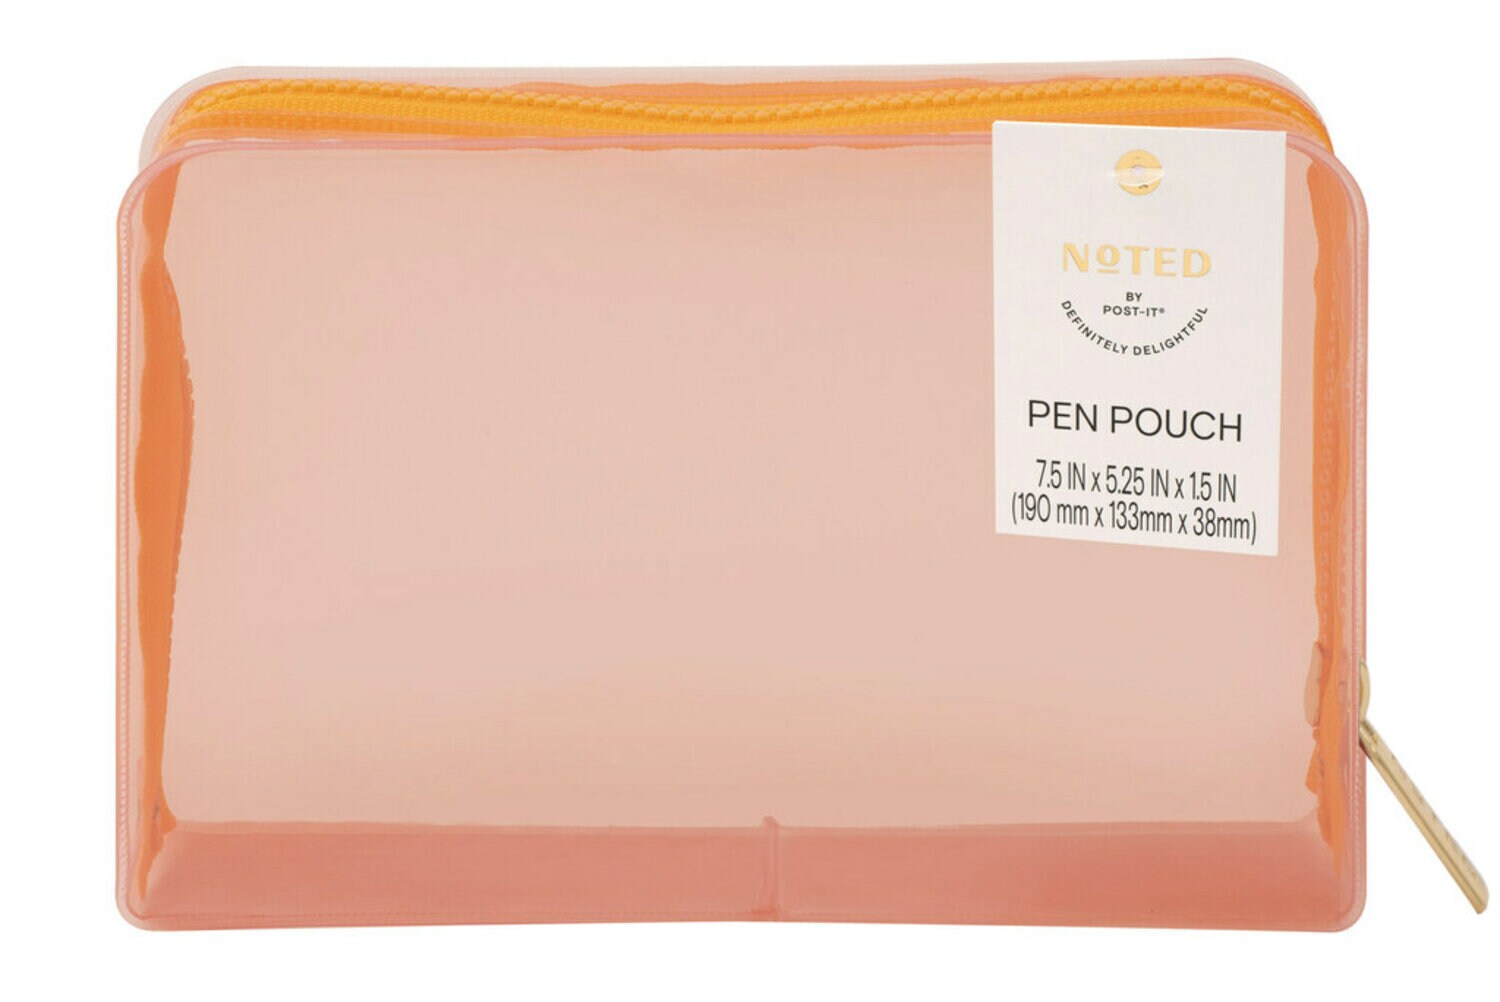 7100292105 - Post-it Pen Pouch NTDW-PP-1, One Pen Pouch